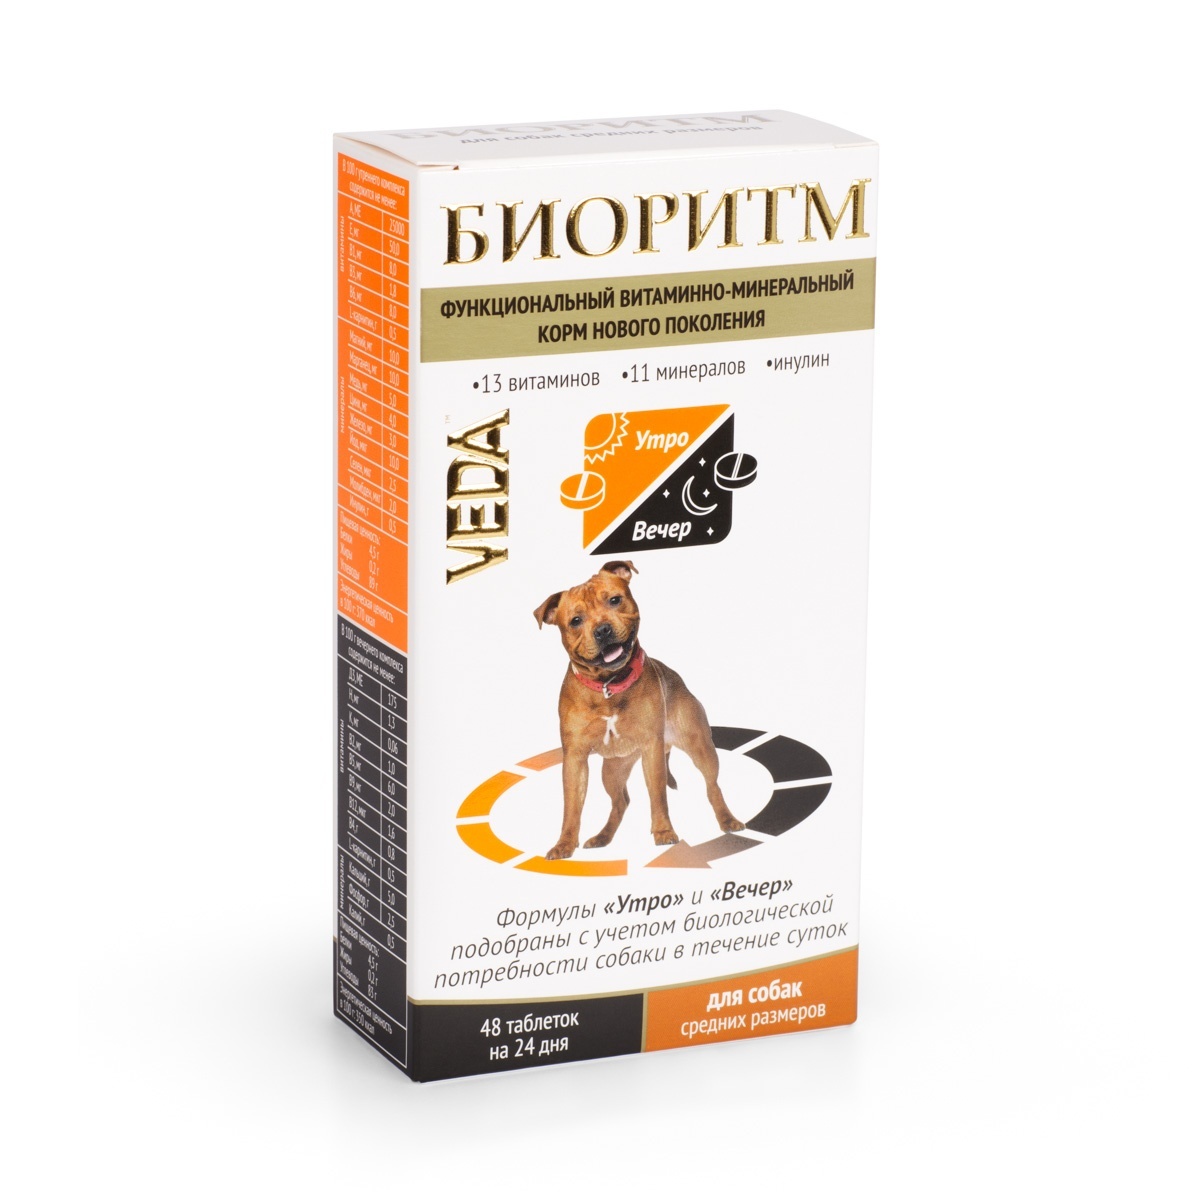 Веда Веда биоритм витамины для собак средних пород (20 г) веда веда шоколад темный с инулином для собак 15 г